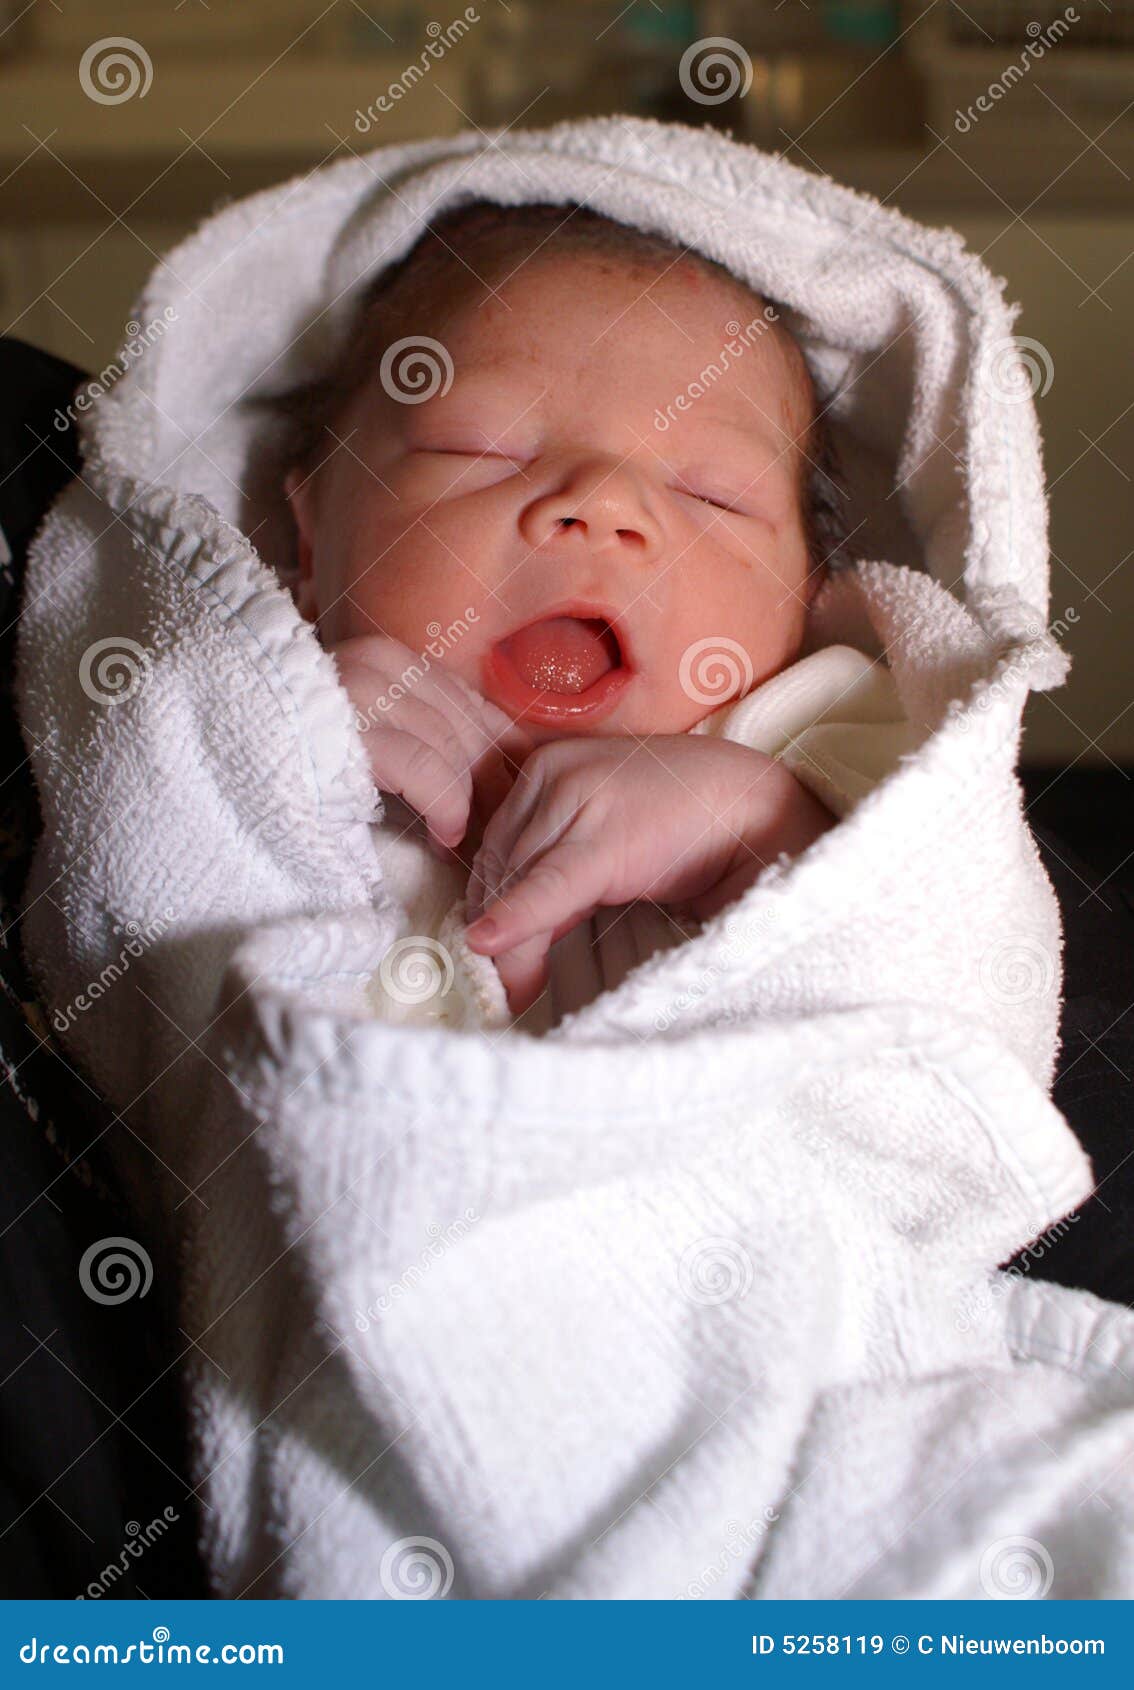 Newborn baby boy stock image. Image of generation, examination - 5258119